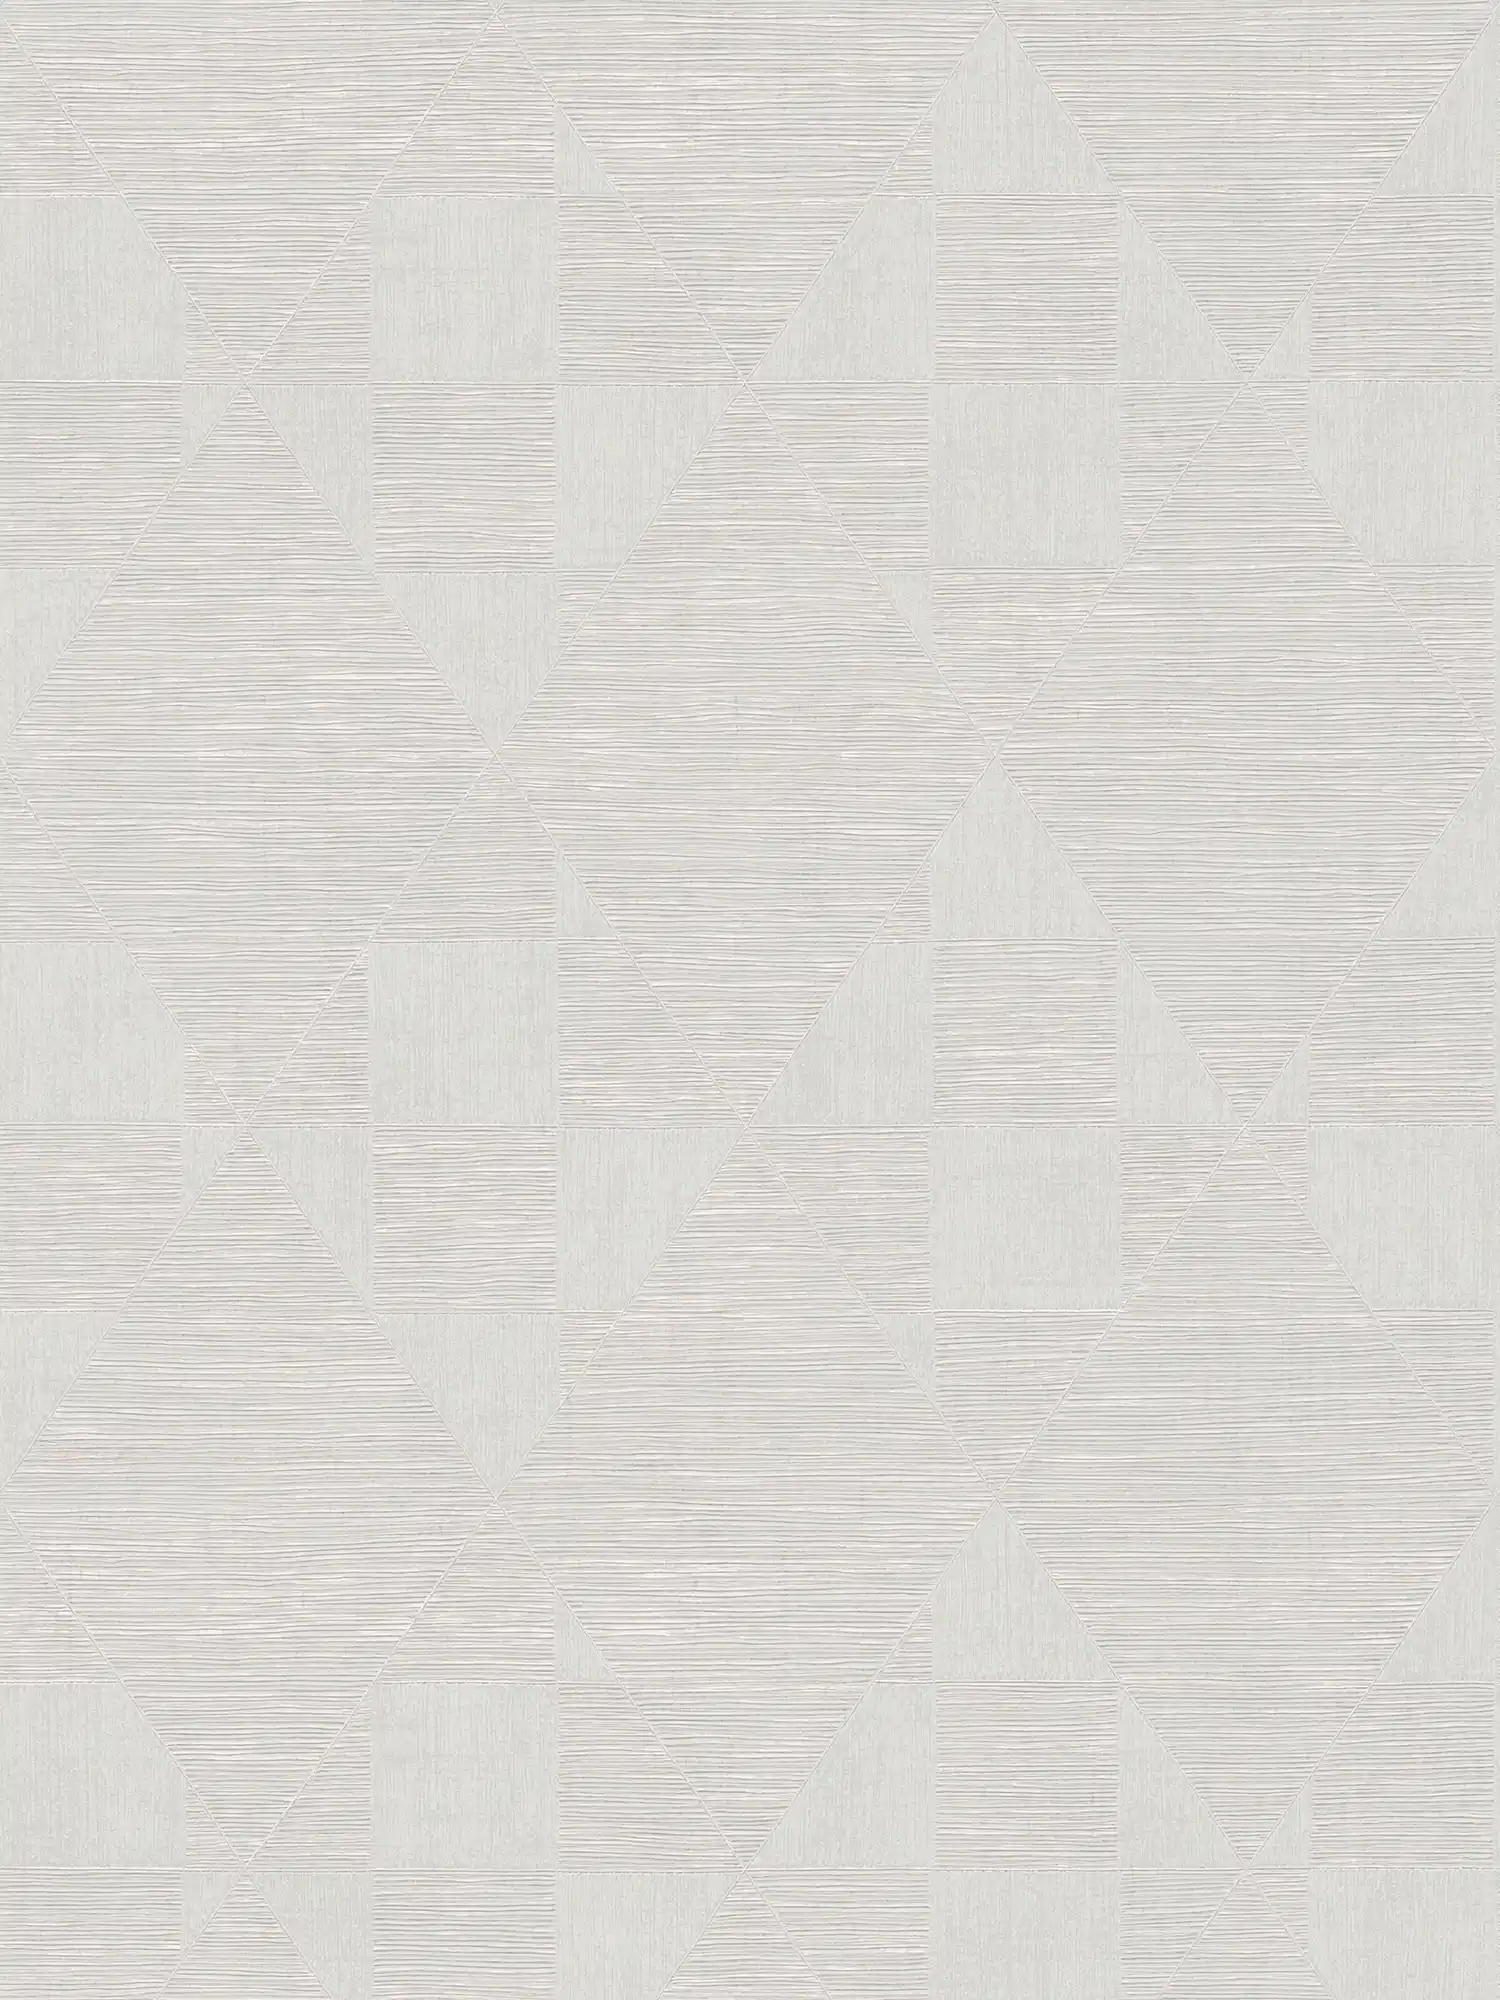             Papel pintado metálico con patrón de estructura geométrica - beige, crema
        